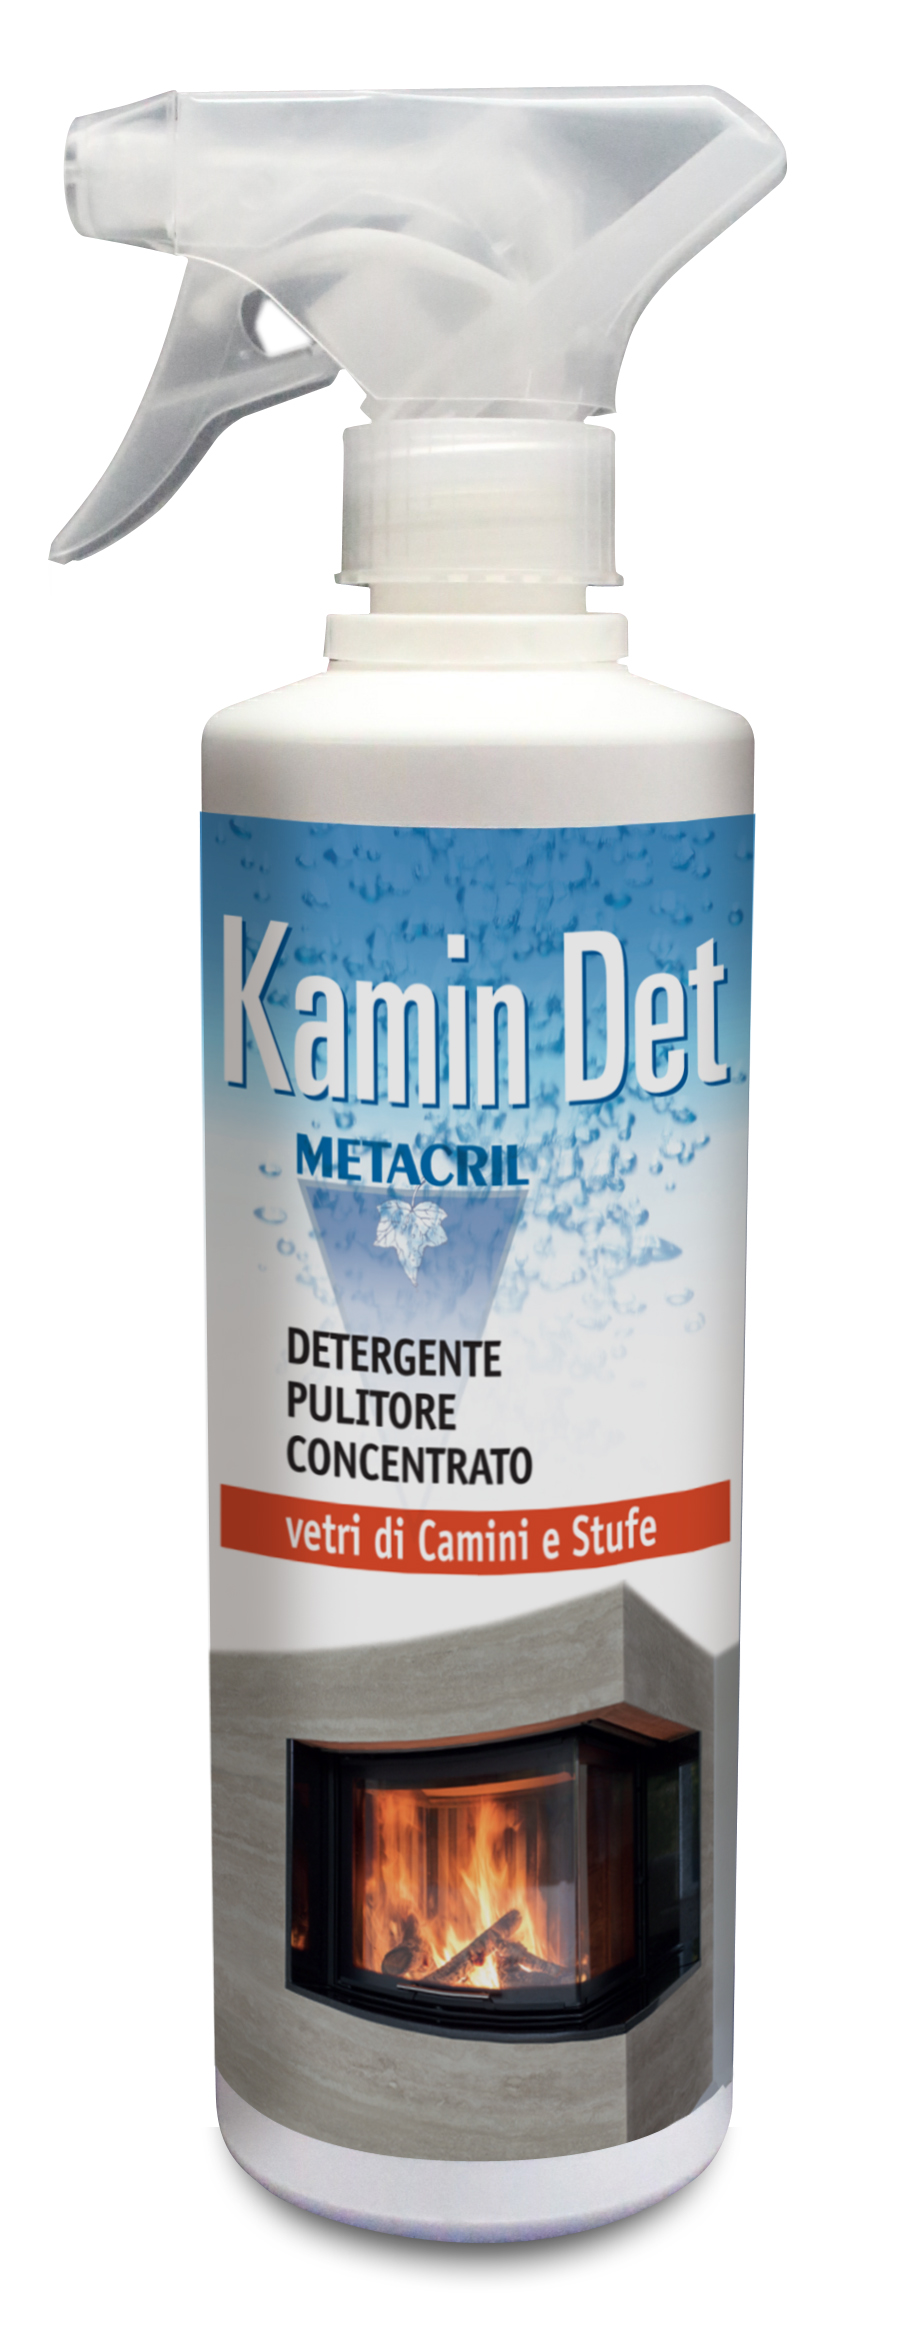 KAMIN DET - 500ml Pulitore detergente e sgrassante super-concentrato per le superfici vetrate del camino o della stufa (legna o pellet).